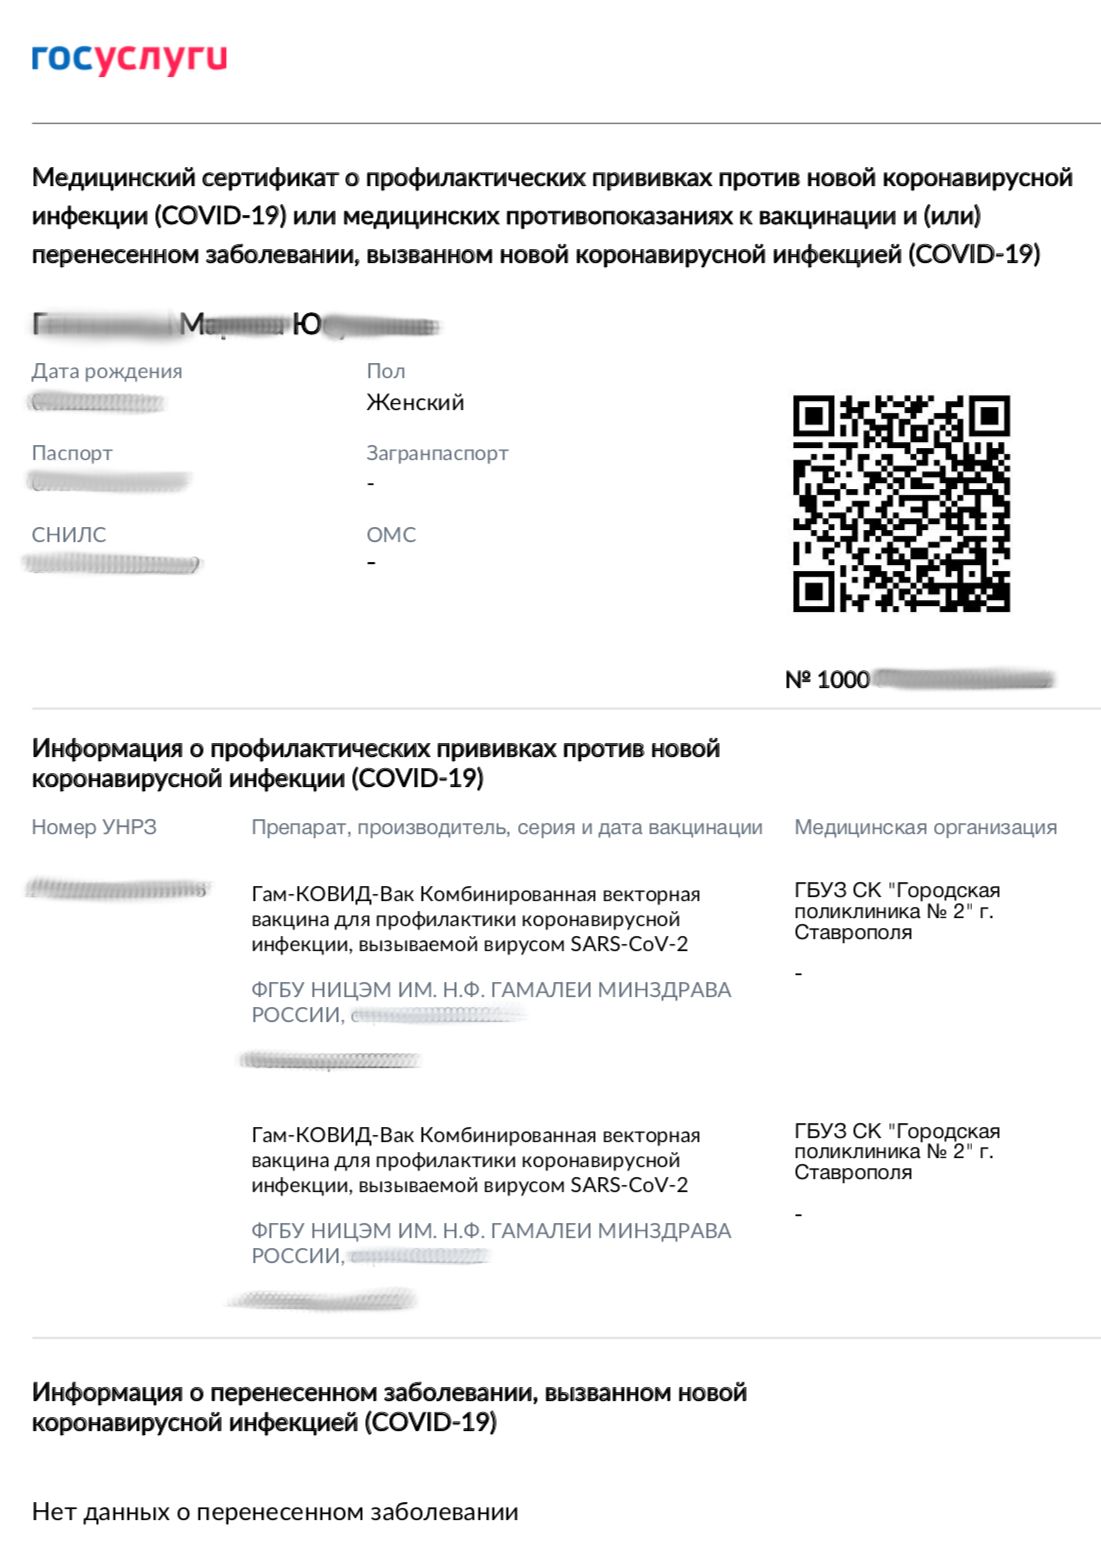 В каком формате выдается сертификат о прививках против коронавируса в Москве?